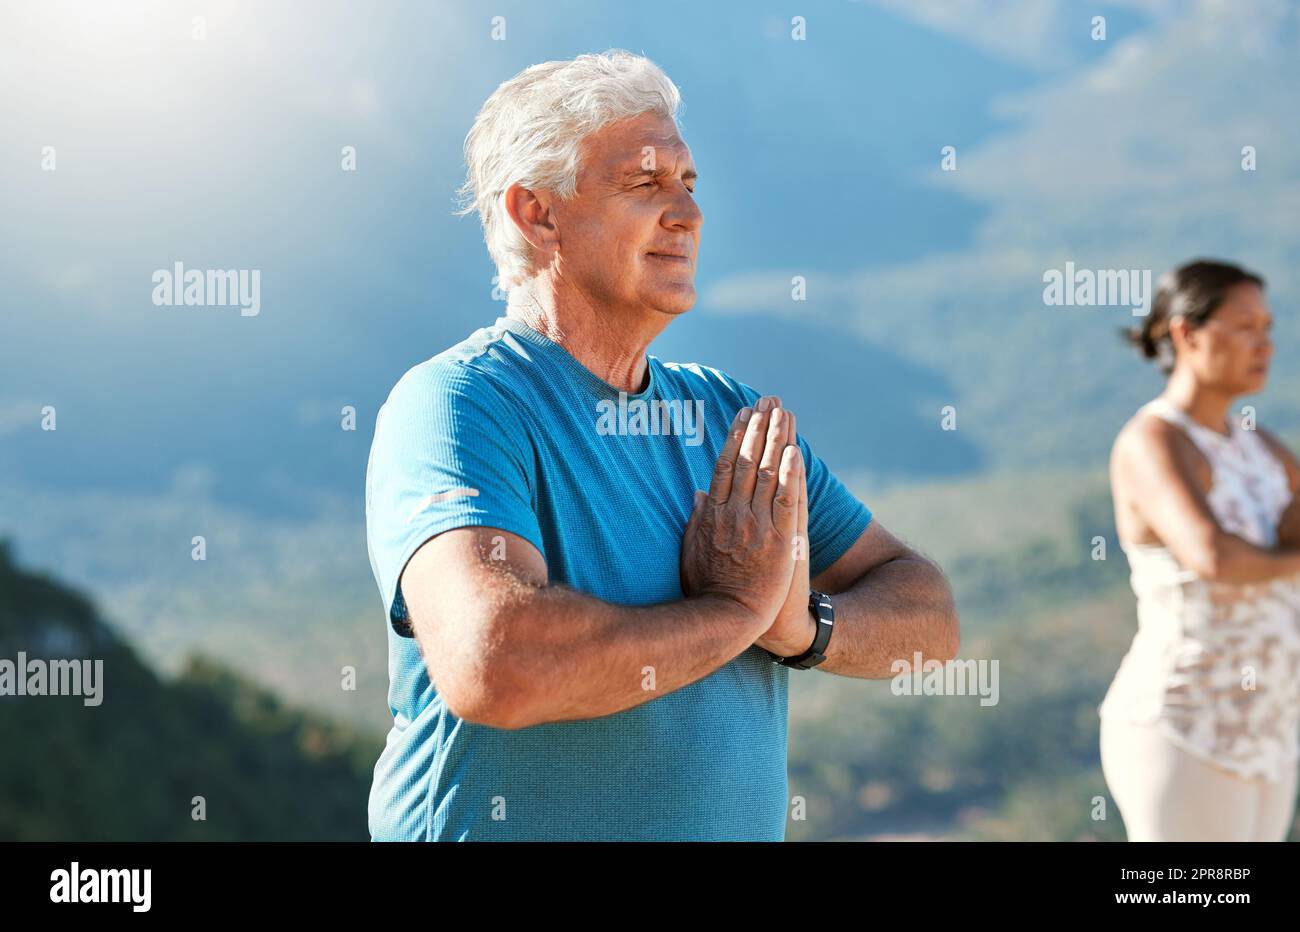 Seniorenmann meditiert mit geschlossenen Händen und geschlossenen Augen tief atmen. Reife Menschen, die Yoga in der Natur machen, leben einen gesunden aktiven Lebensstil im Ruhestand Stockfoto